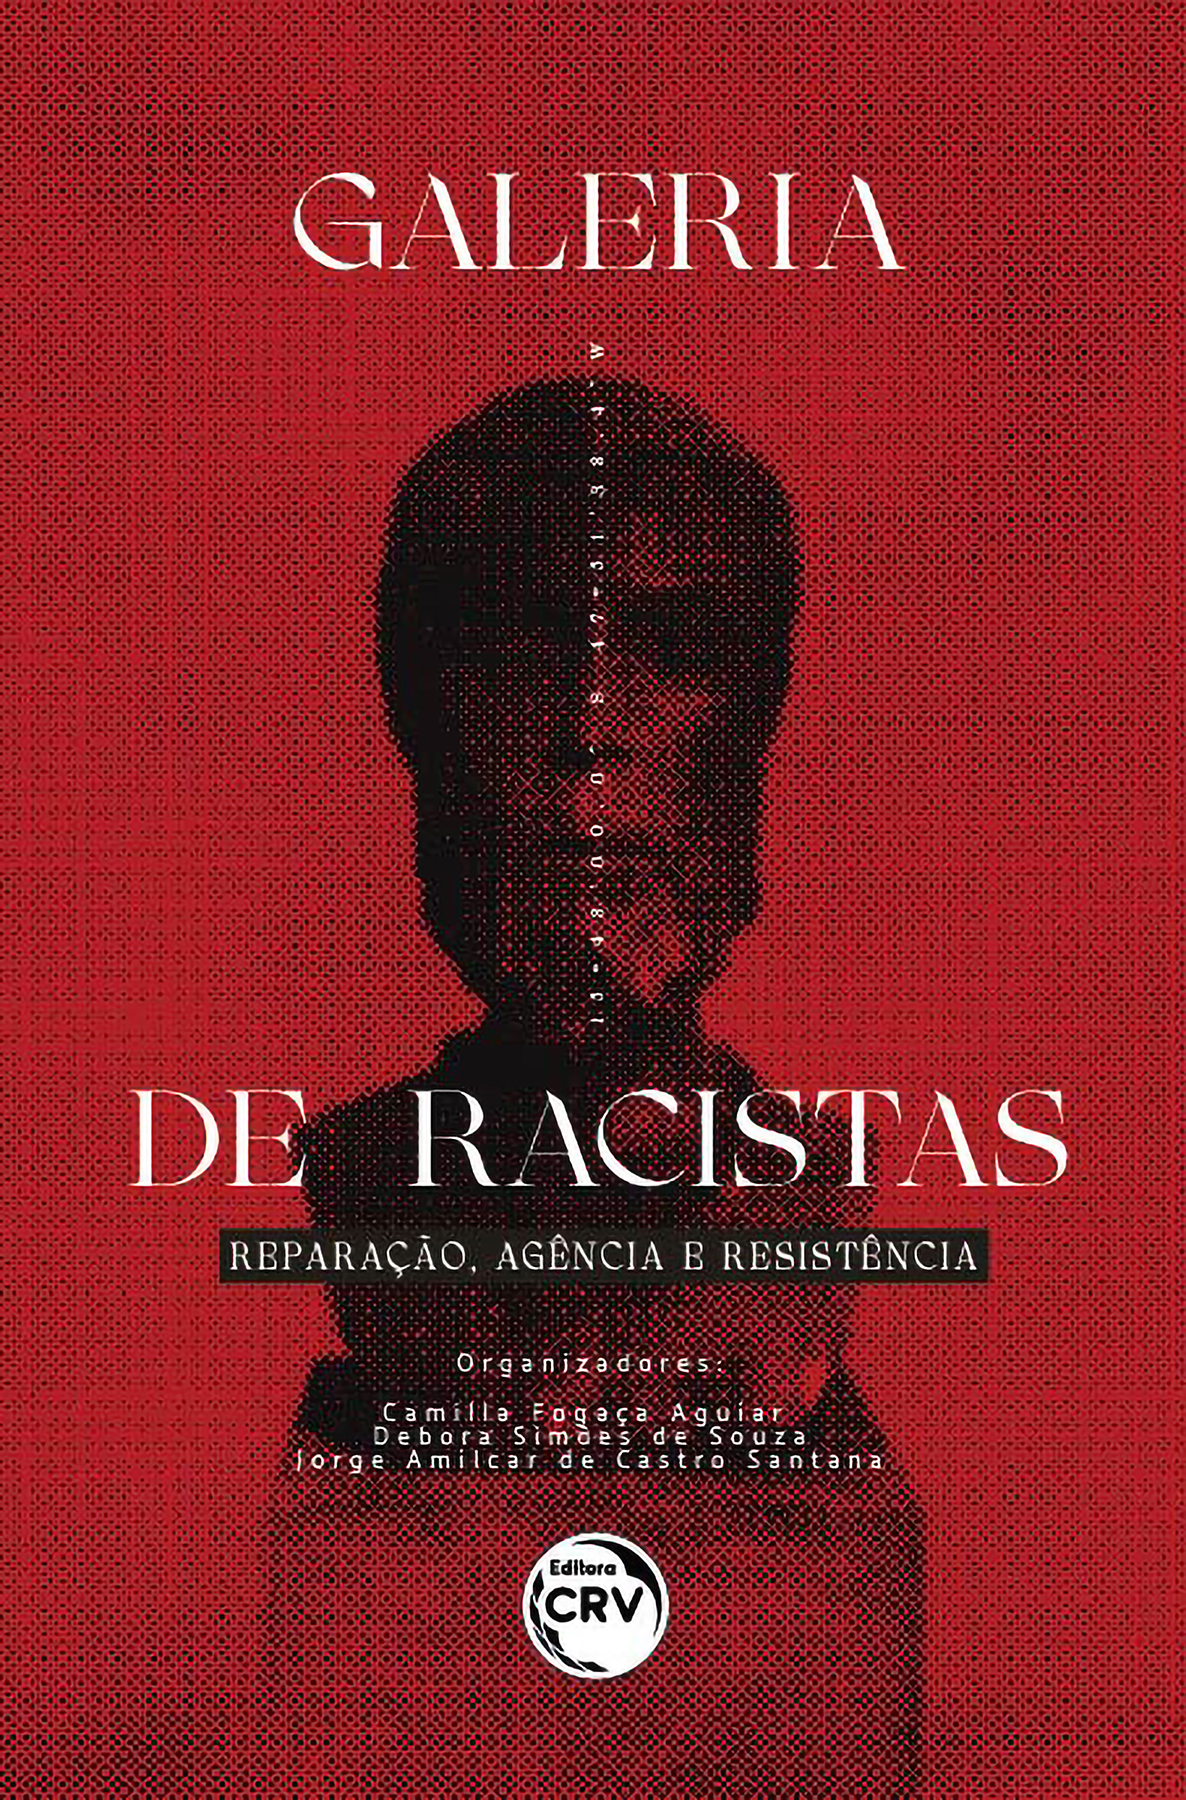 Capa do livro: Galeria de racistas:<BR> Reparação, agência e resistência